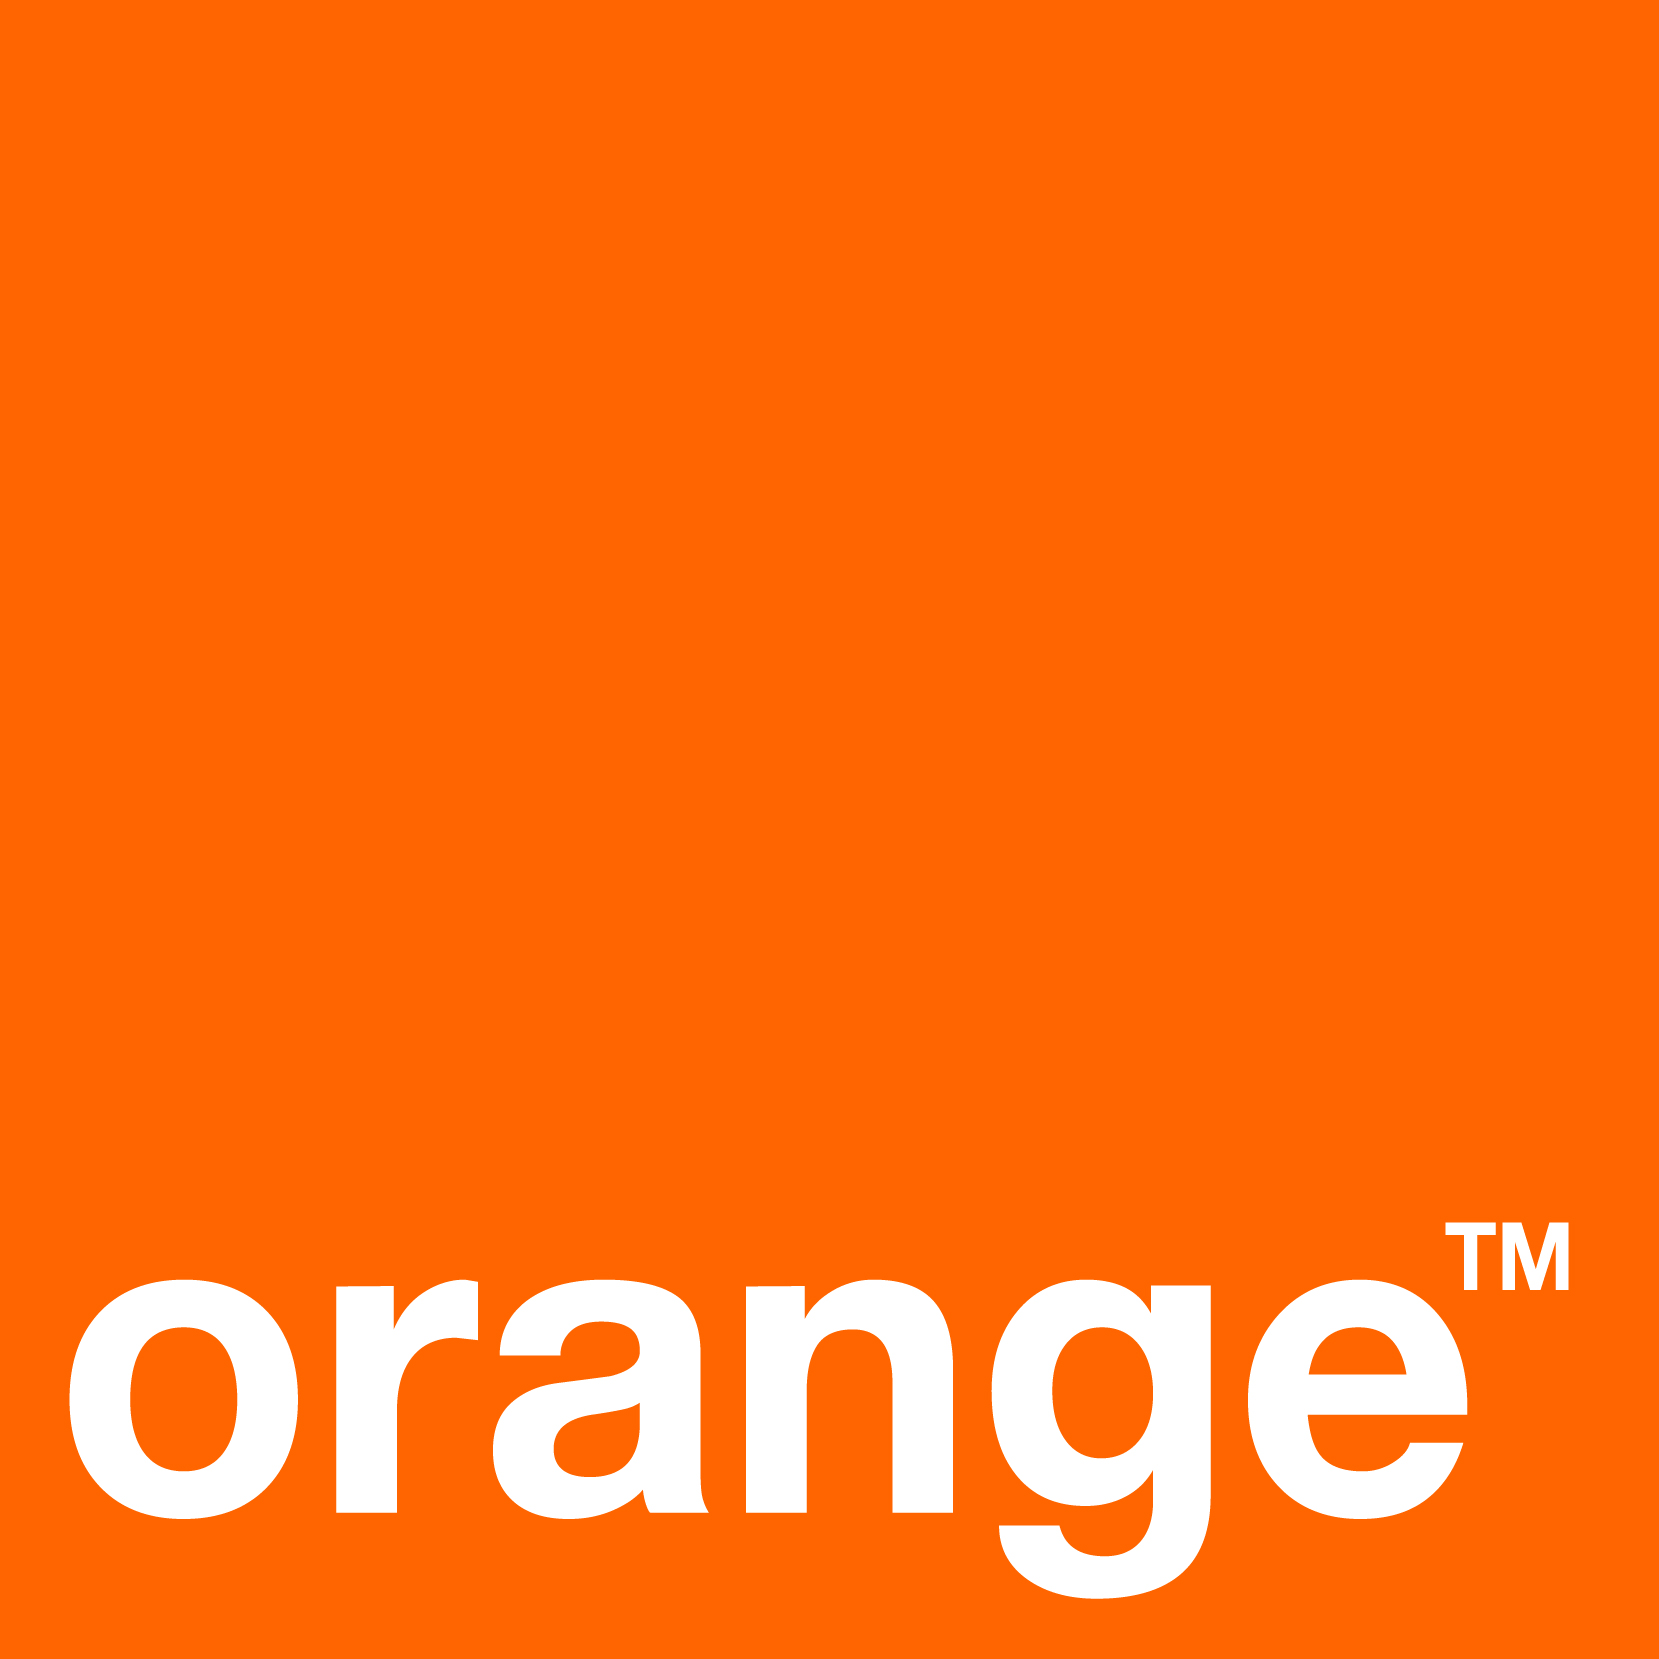 Client Orange